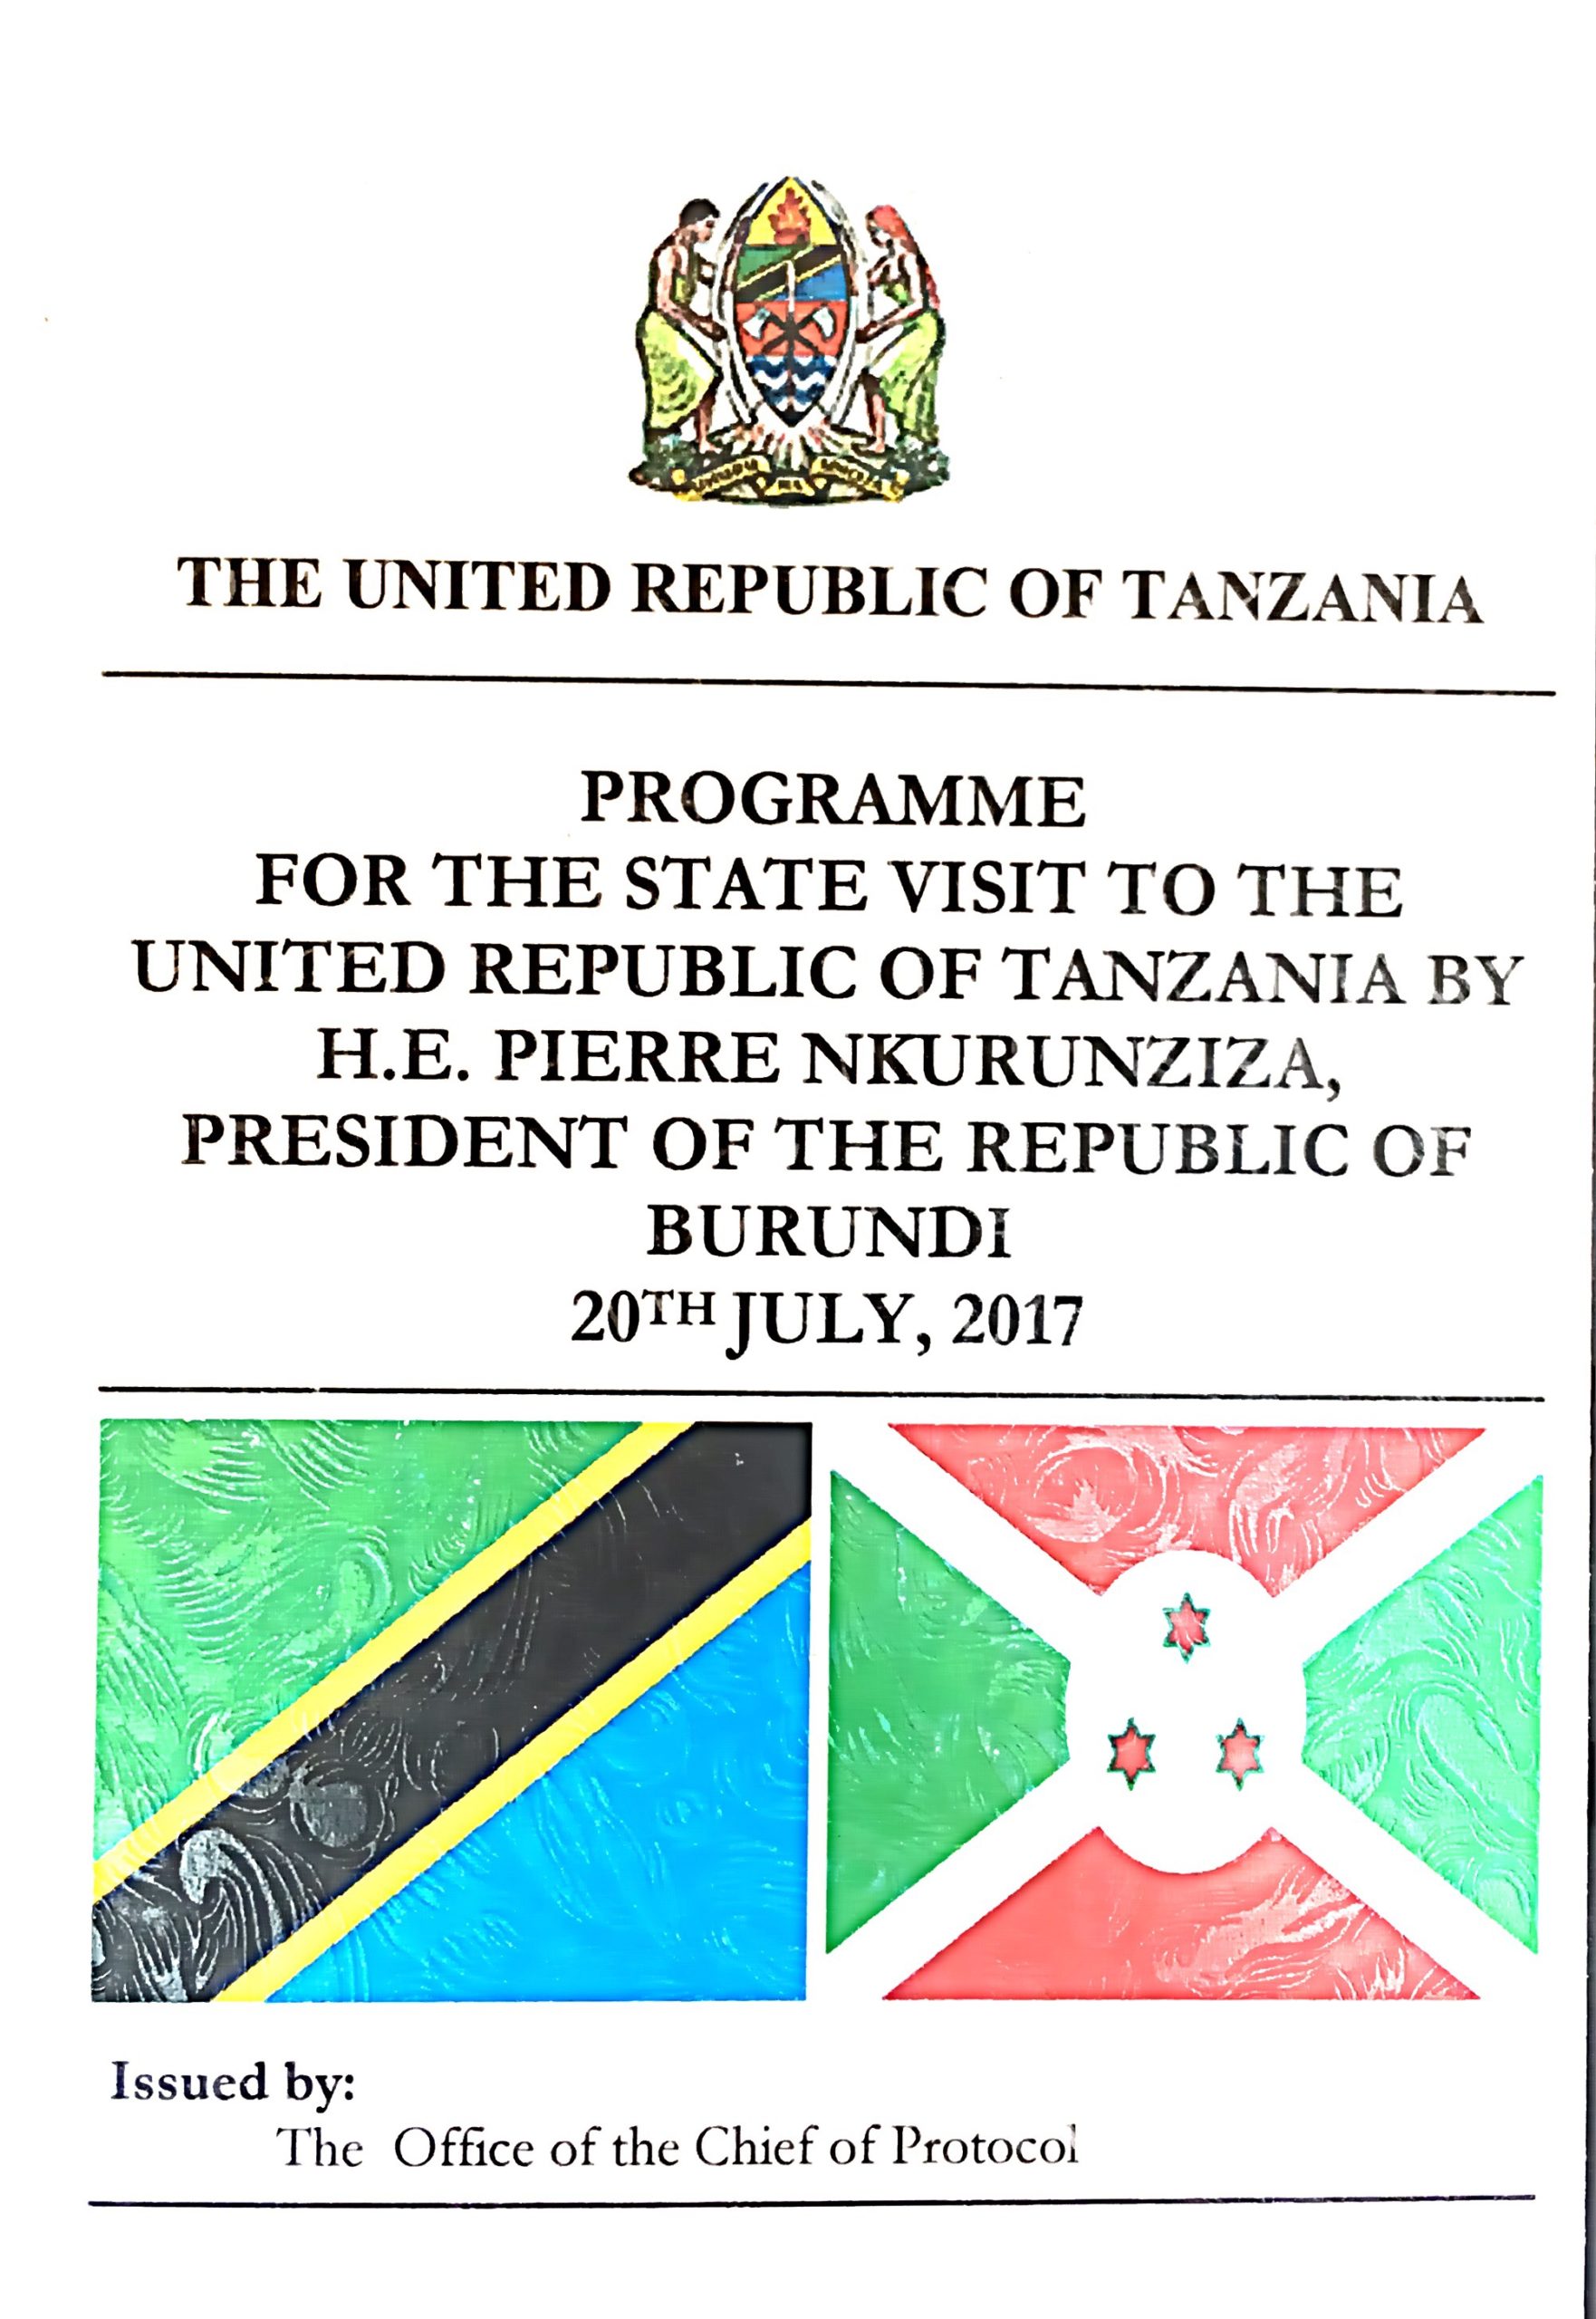 Le Président Pierre Nkurunziza effectue une visite d’Etat en Tanzanie